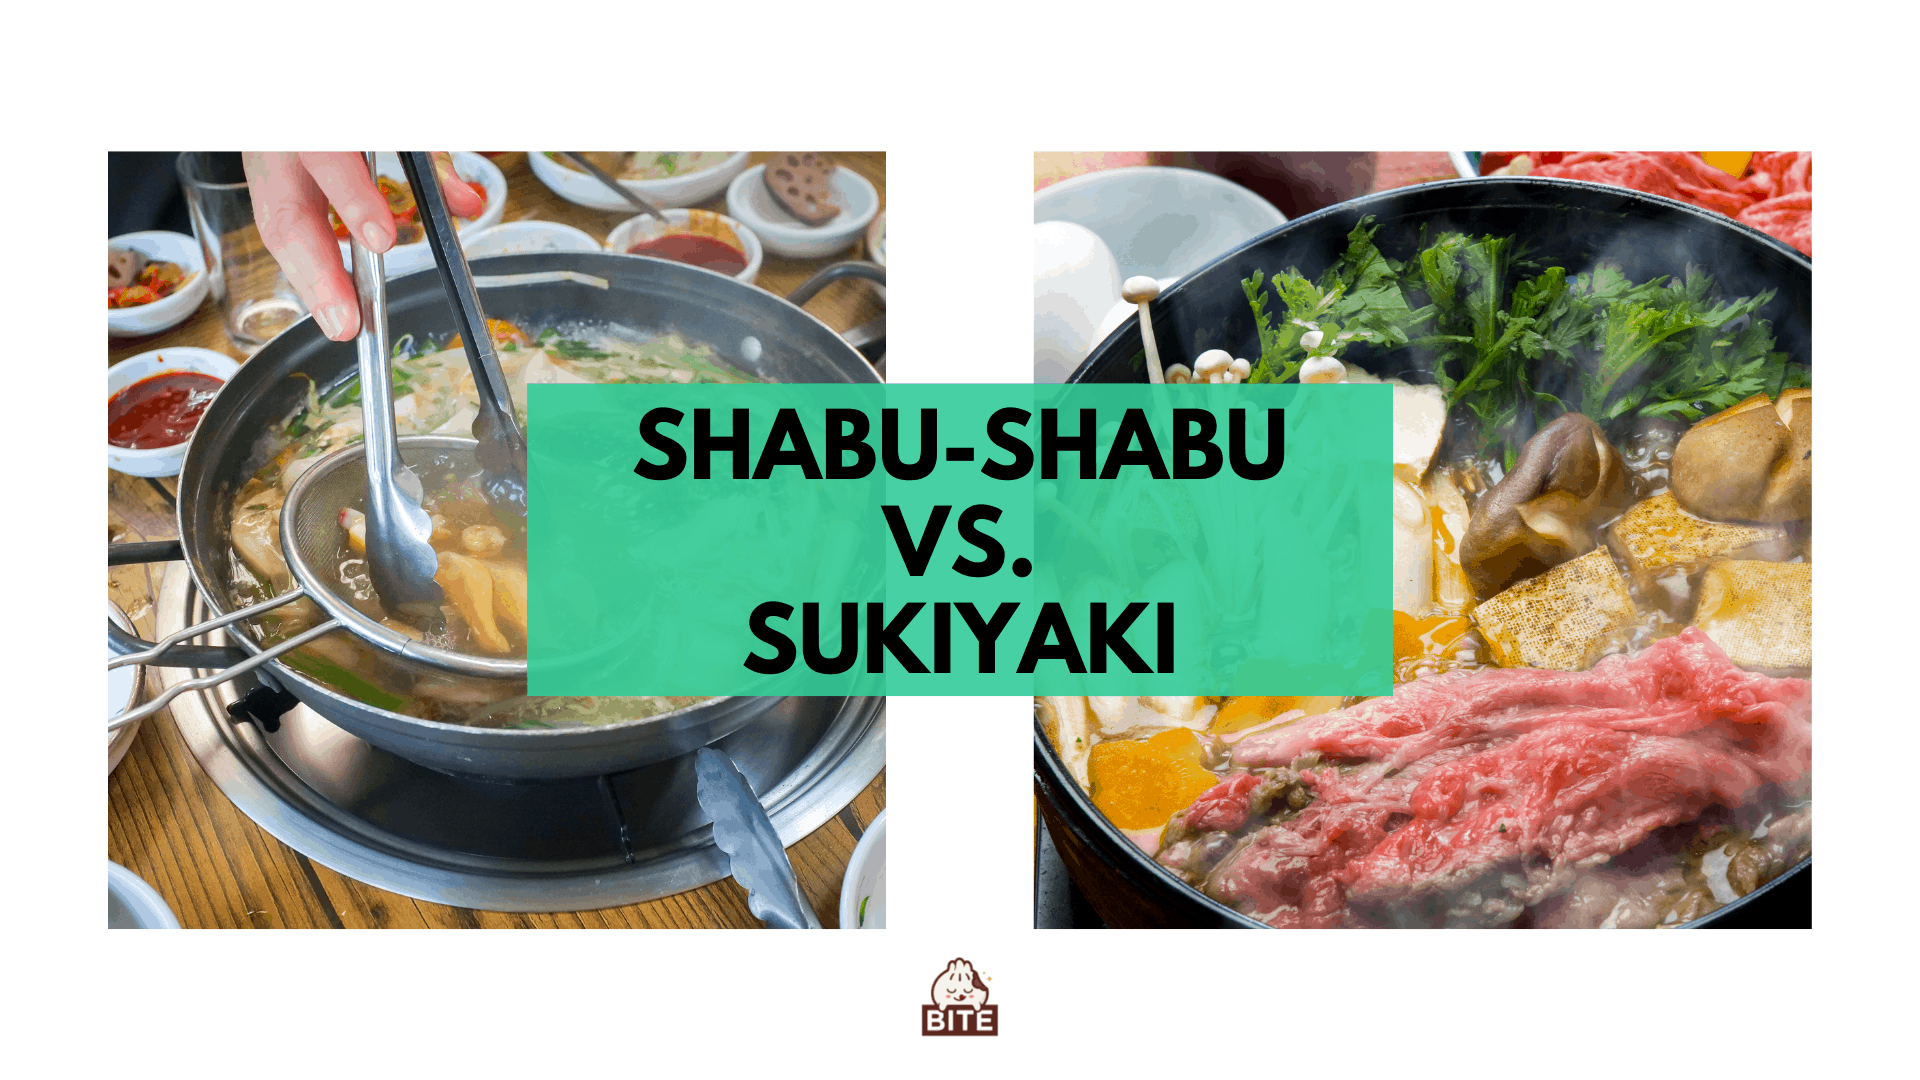 Shabu-shabu contra sukiyaki | Ambos platos calientes pero con un toque diferente.